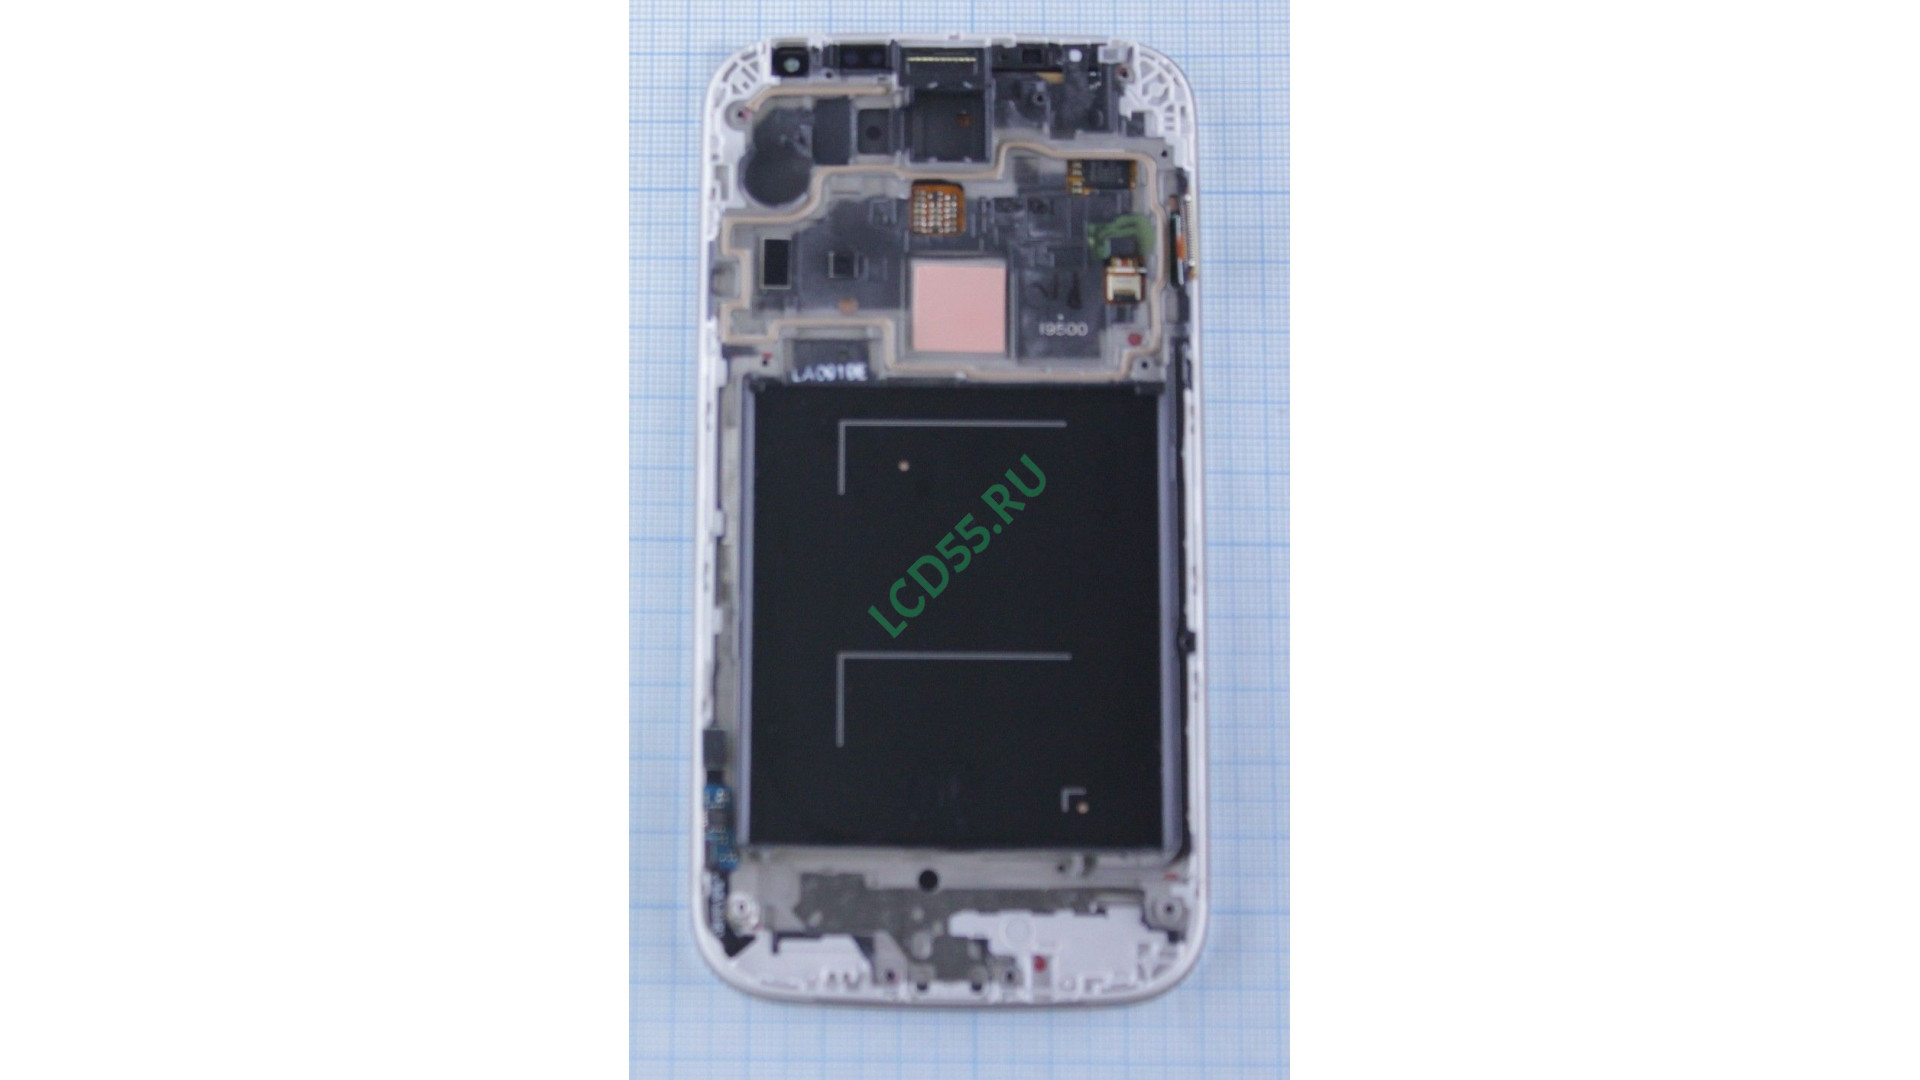 Телефон Samsung amsung Galaxy S4 GT-I9500, черный